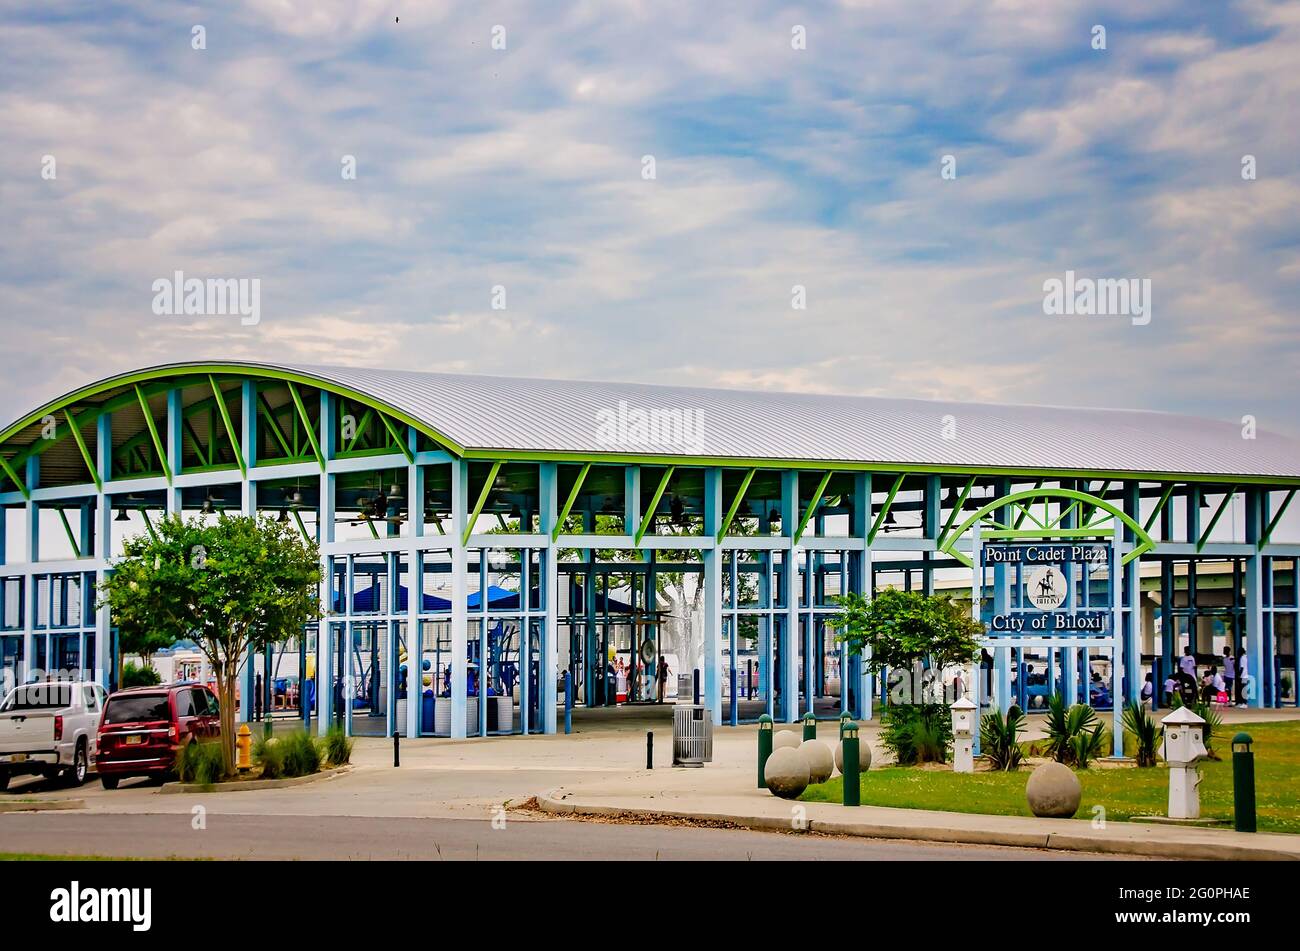 Il Point Cadet Plaza è raffigurato, il 29 maggio 2021, a Biloxi, Mississippi. Il parco sul lungomare dispone di un grande padiglione e di un paraspruzzi per i bambini. Foto Stock